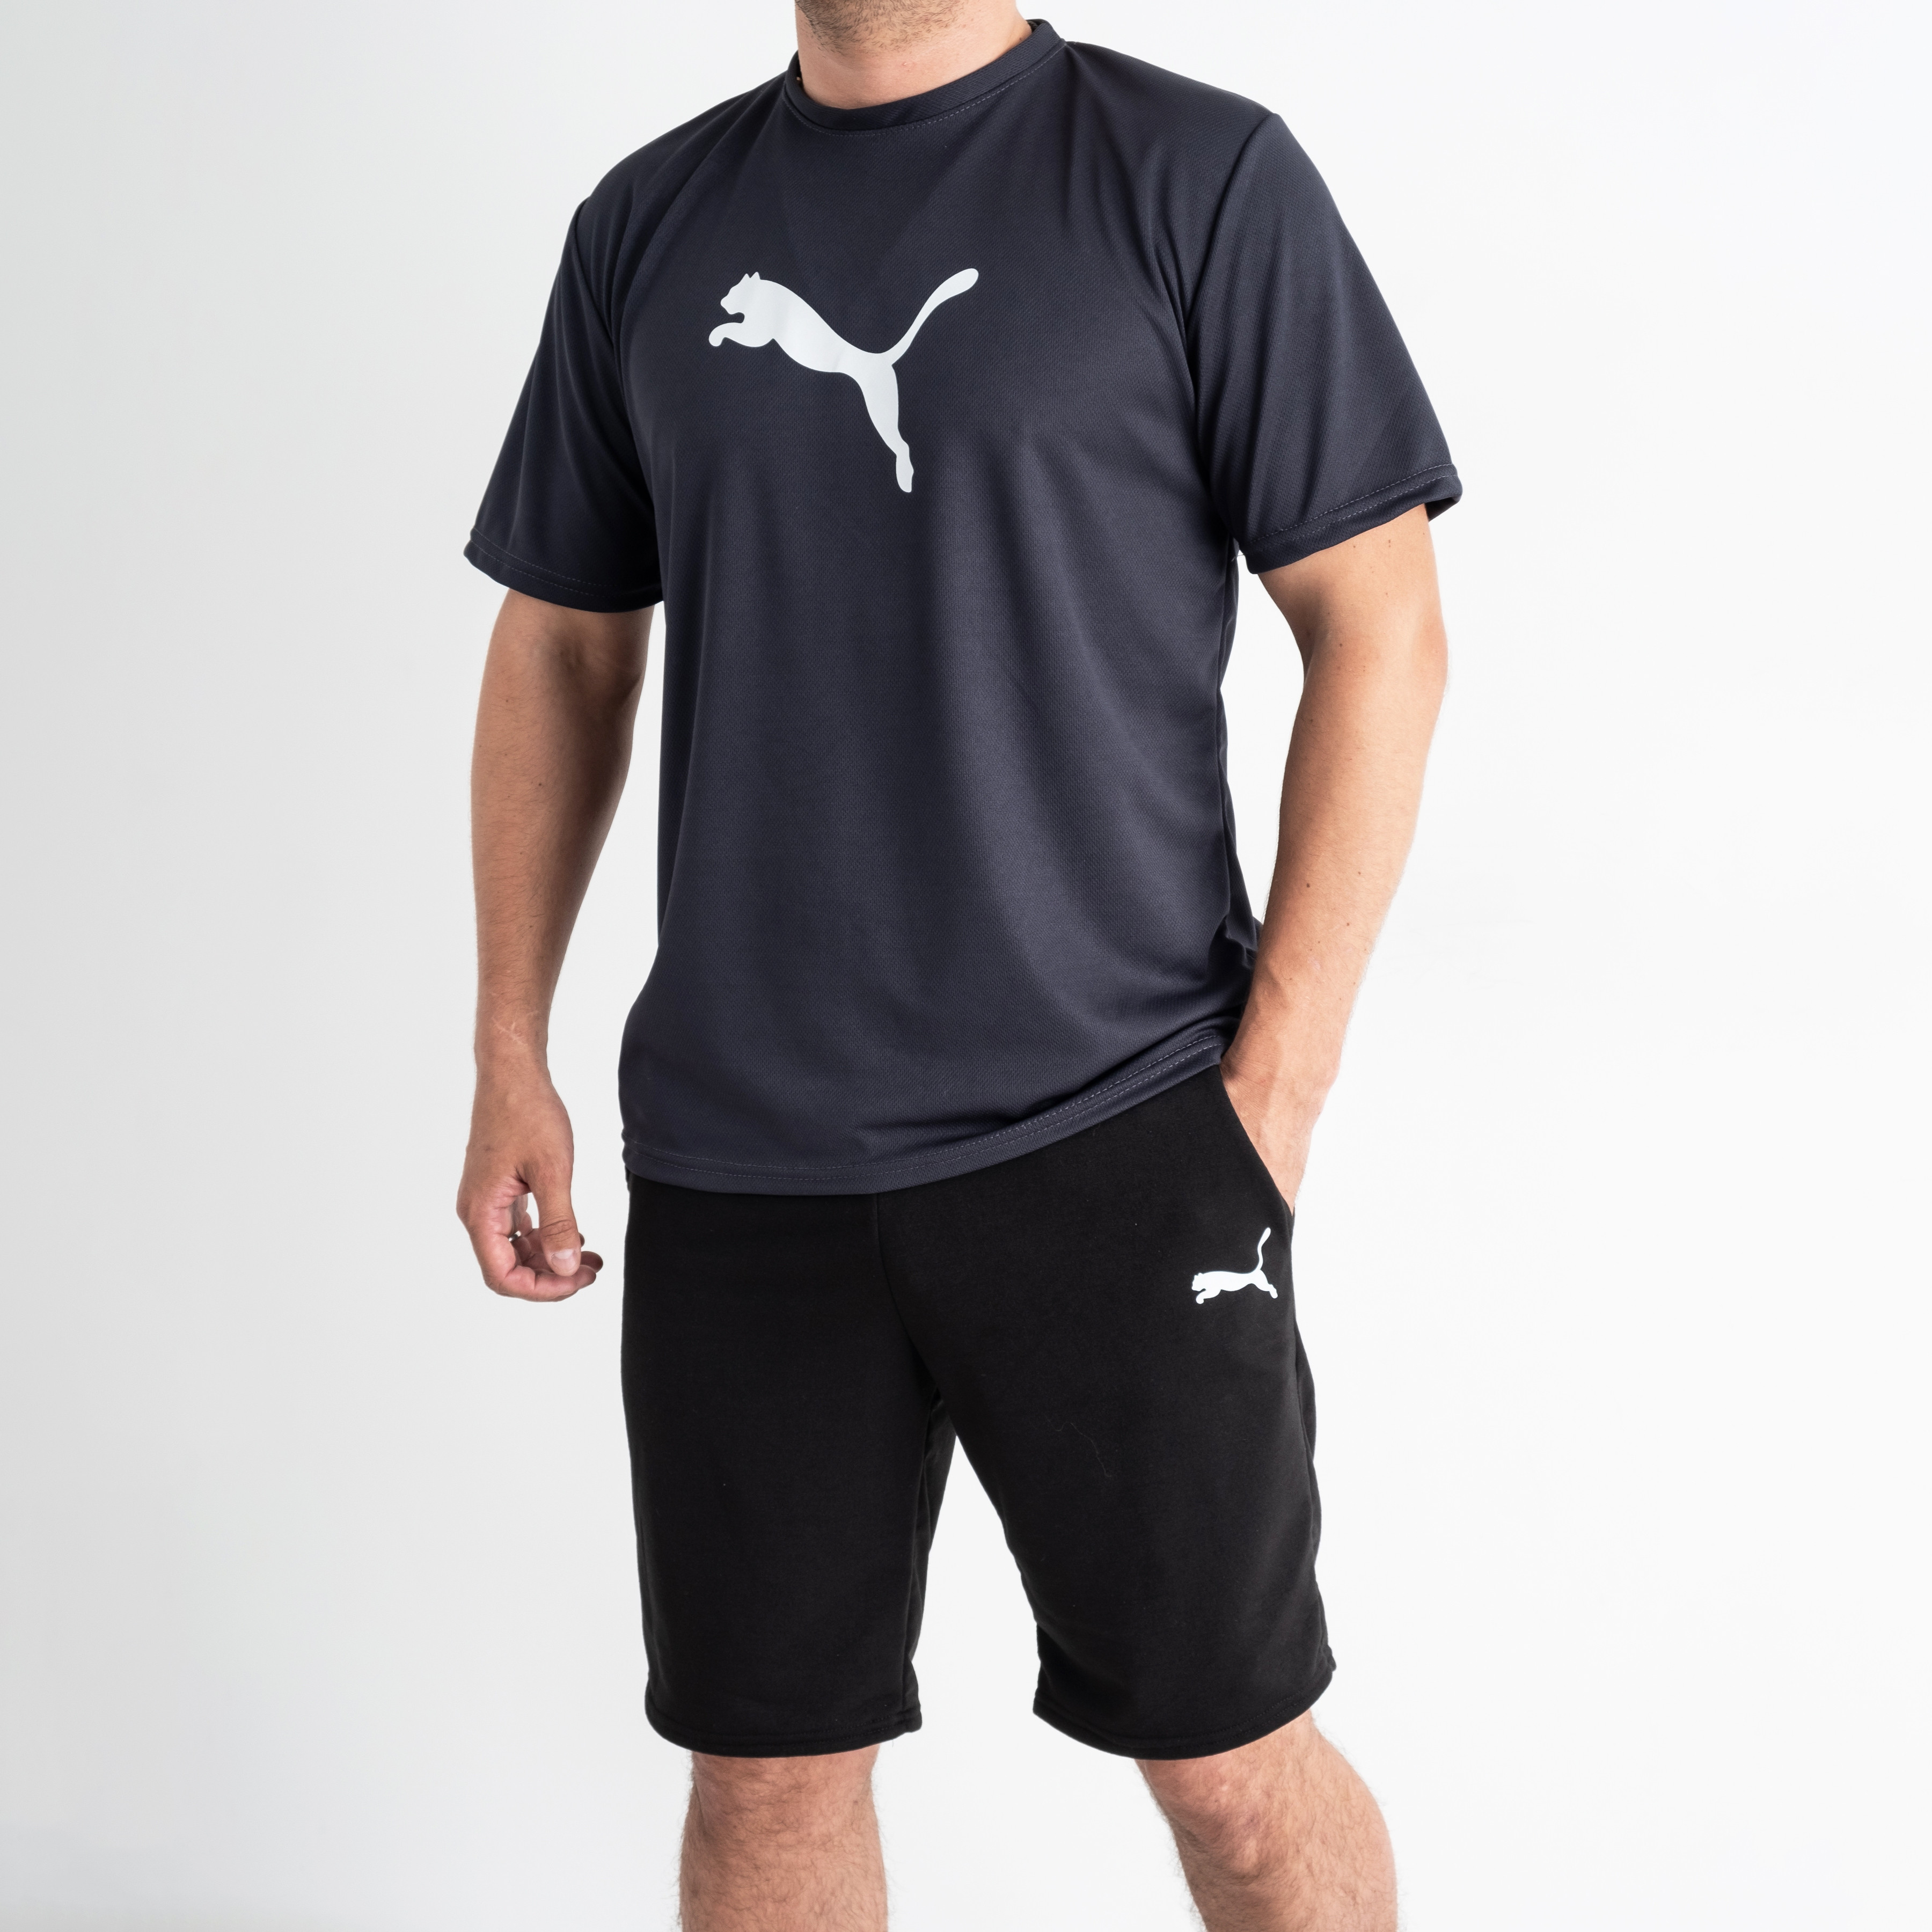 3365-6 ТЁМНО СЕРЫЙ спортивный костюм мужской (футболка + шорты) С ПРИНТОМ (5 ед. размеры: M.L.XL.2XL.3XL)